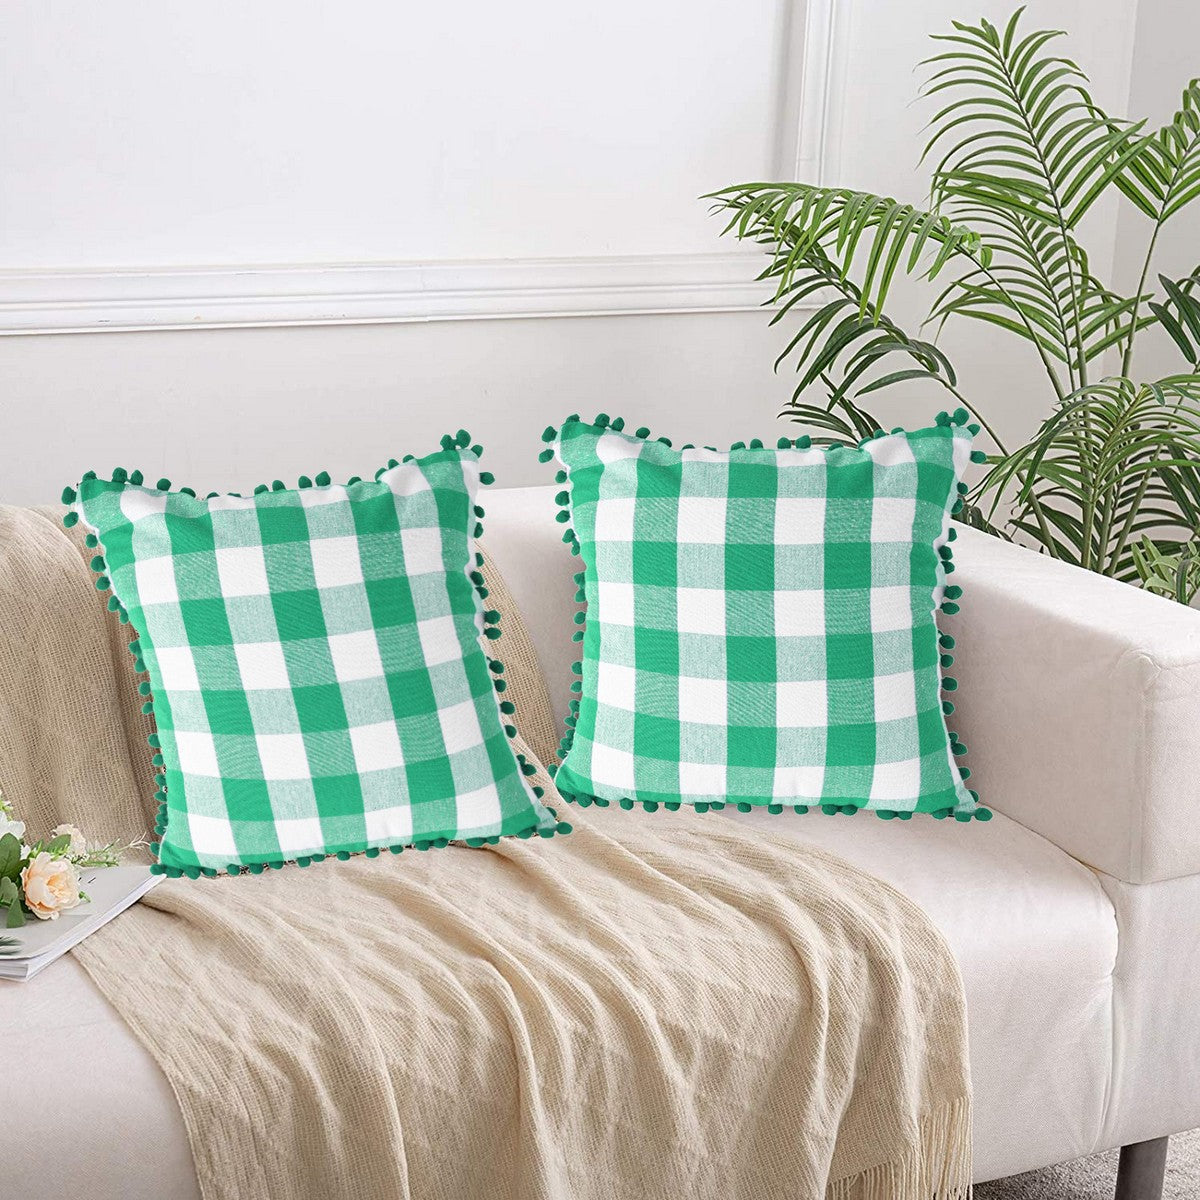 Lushomes Square Cushion Cover with Pom Pom, Cotton Sofa Pillow Cover Set of 2, 20x20 Inch, Big Checks, Green and White Checks, Pillow Cushions Covers (Pack of 2, 50x50 Cms)